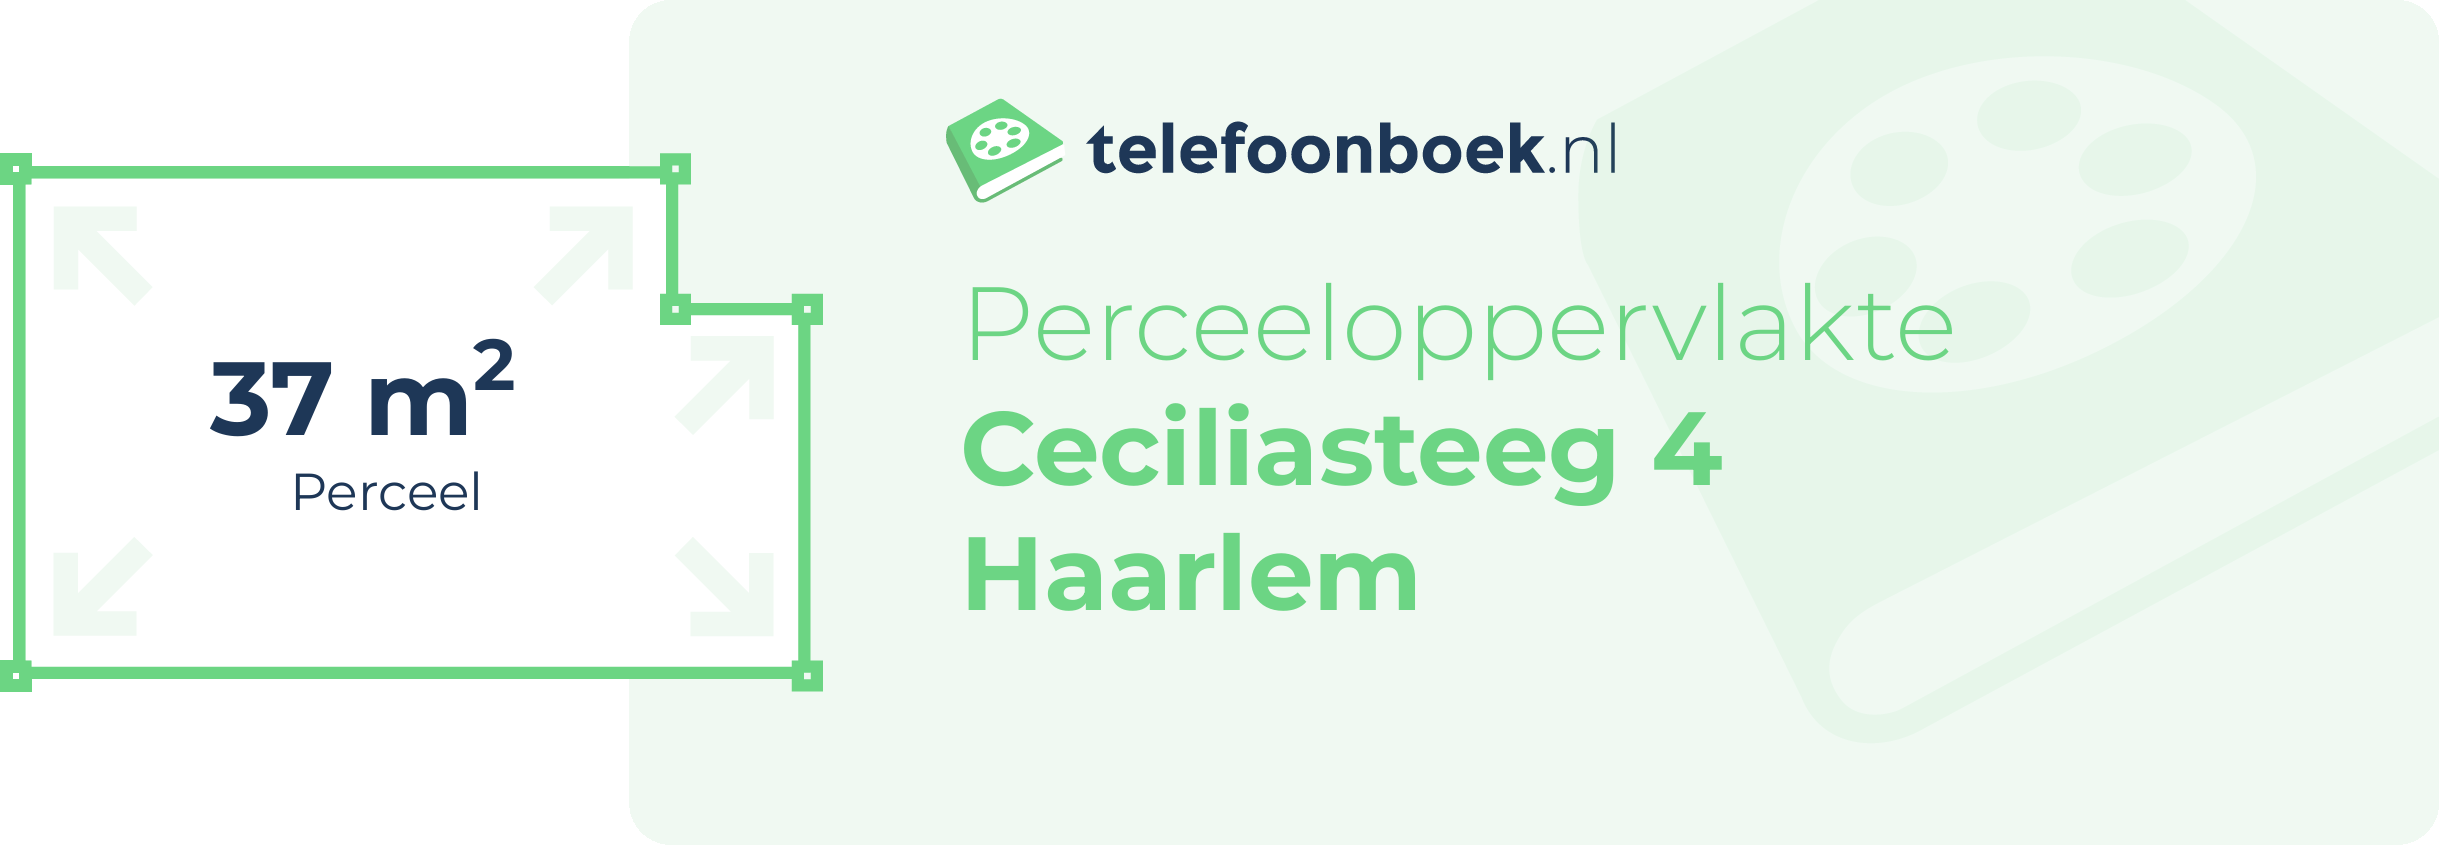 Perceeloppervlakte Ceciliasteeg 4 Haarlem